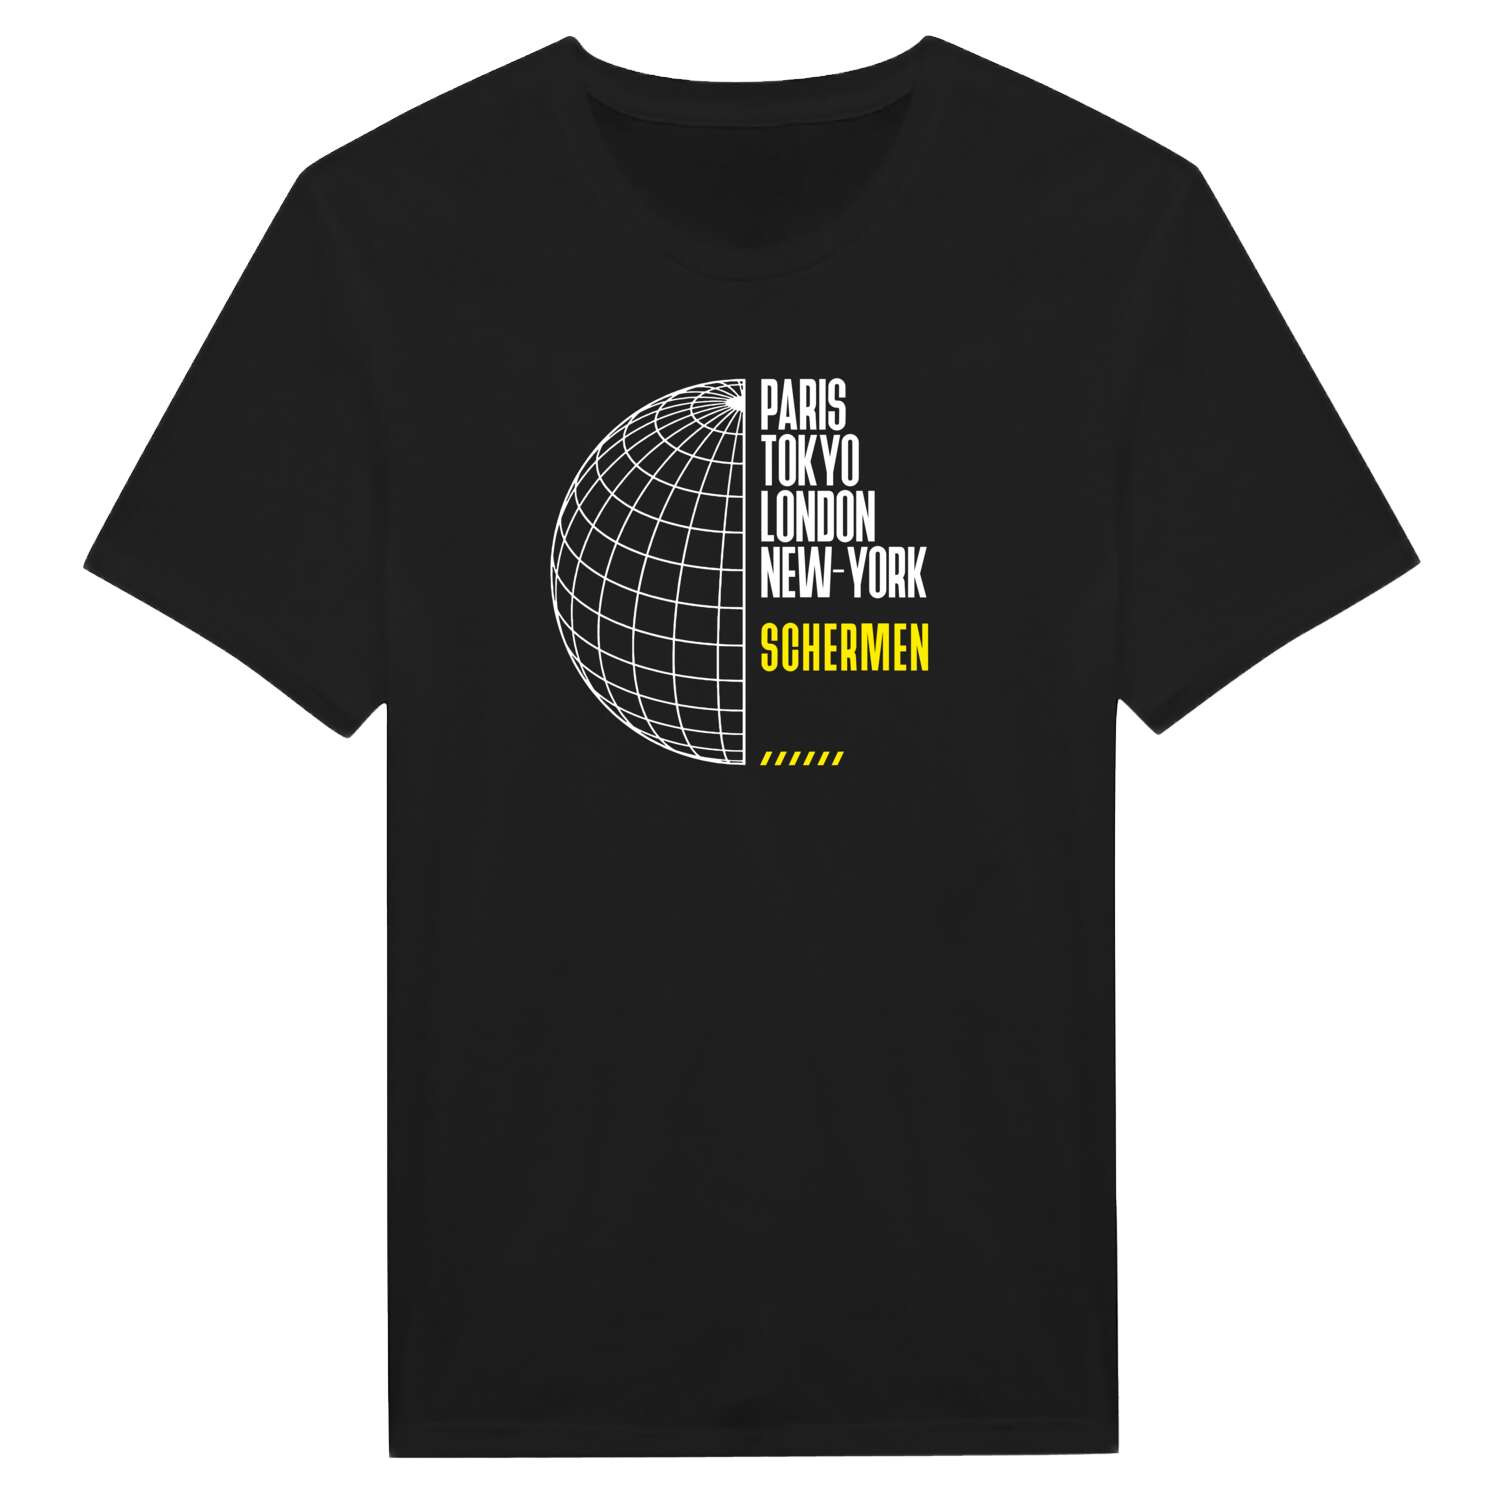 Schermen T-Shirt »Paris Tokyo London«